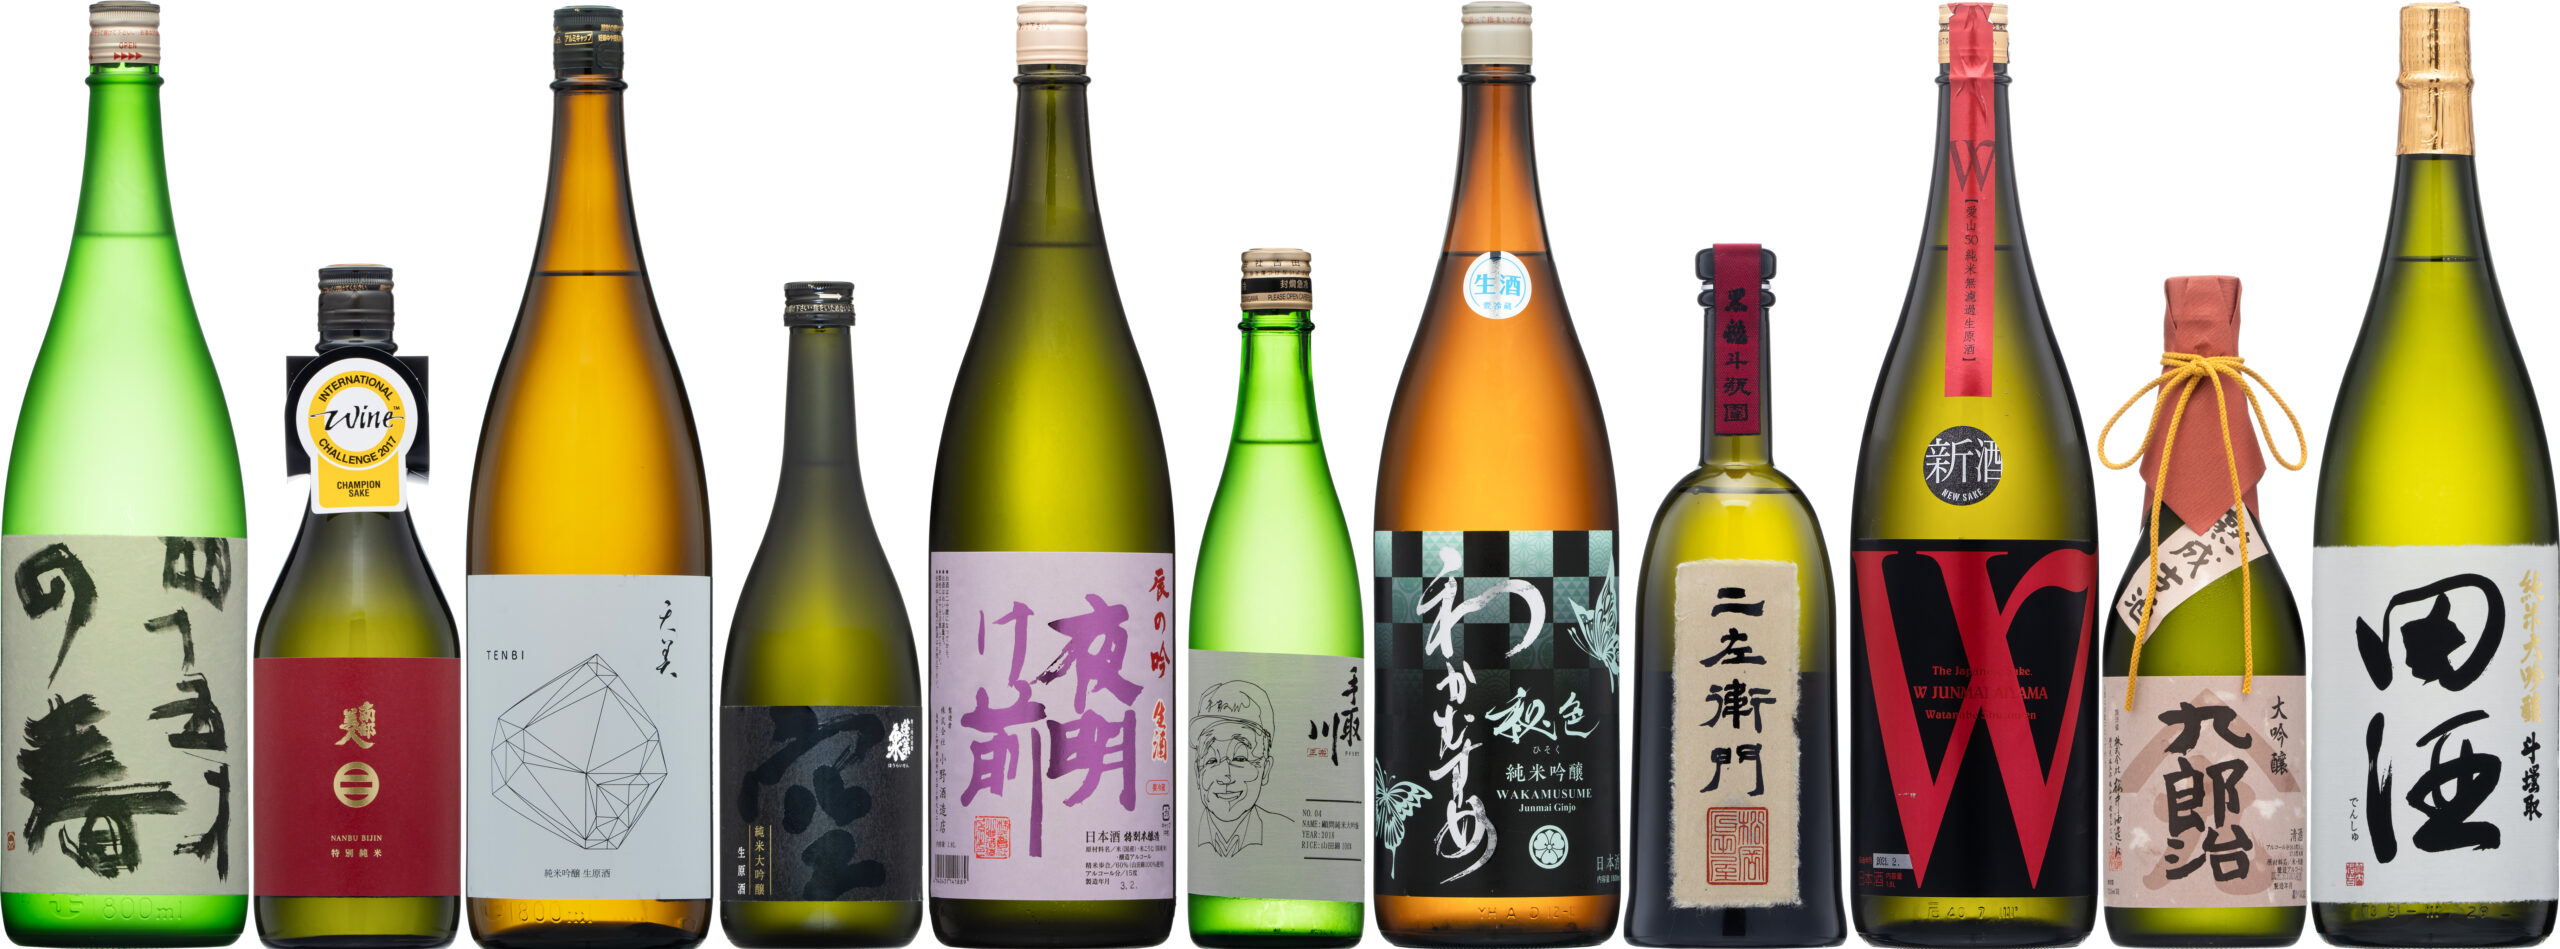 由紀の酒 Best of the year 2021